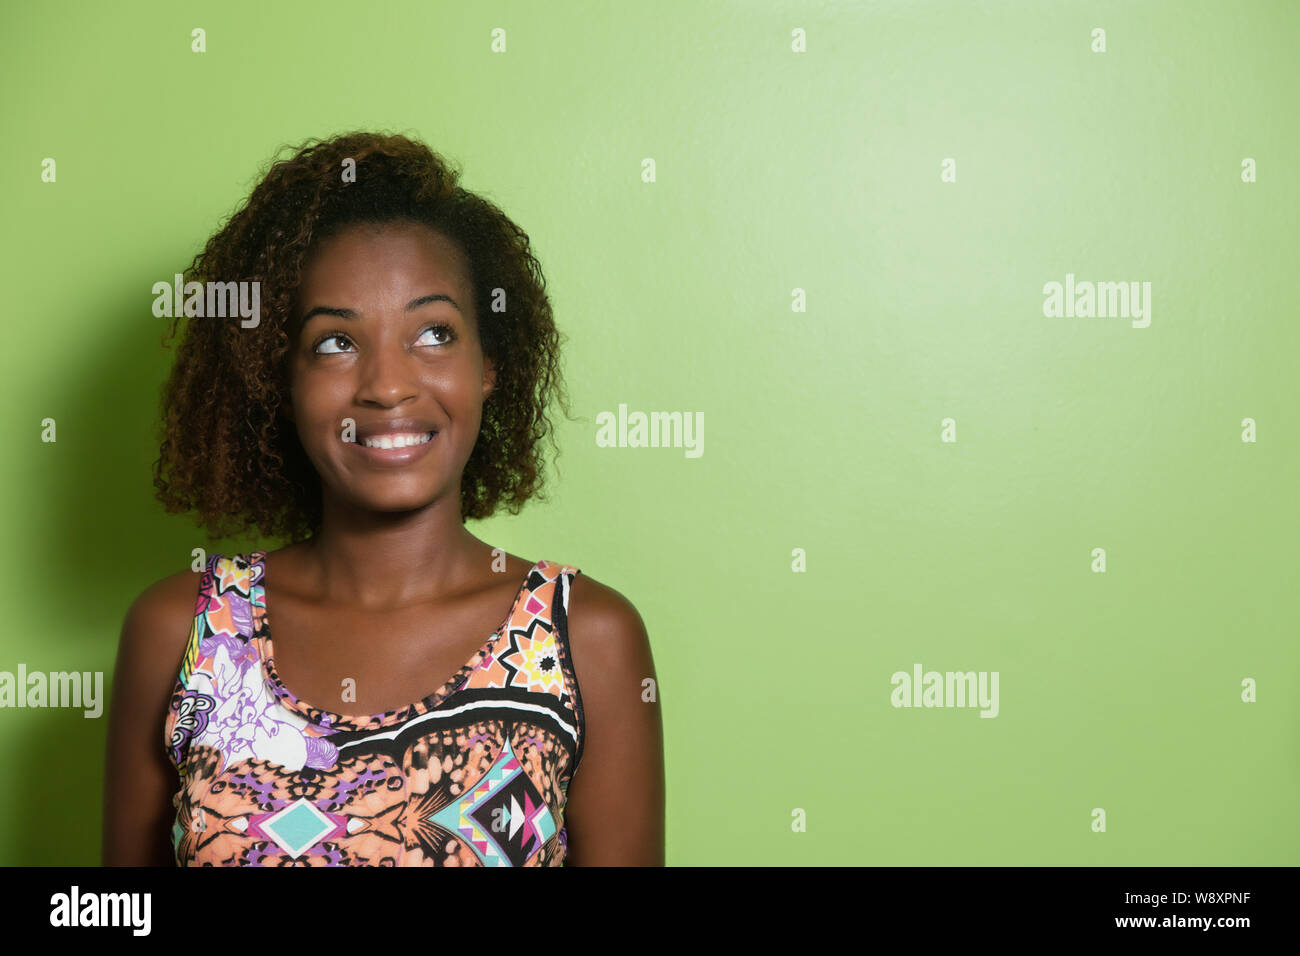 Belle femme afro-américaine à l'horizontale pour une muraille verte Banque D'Images